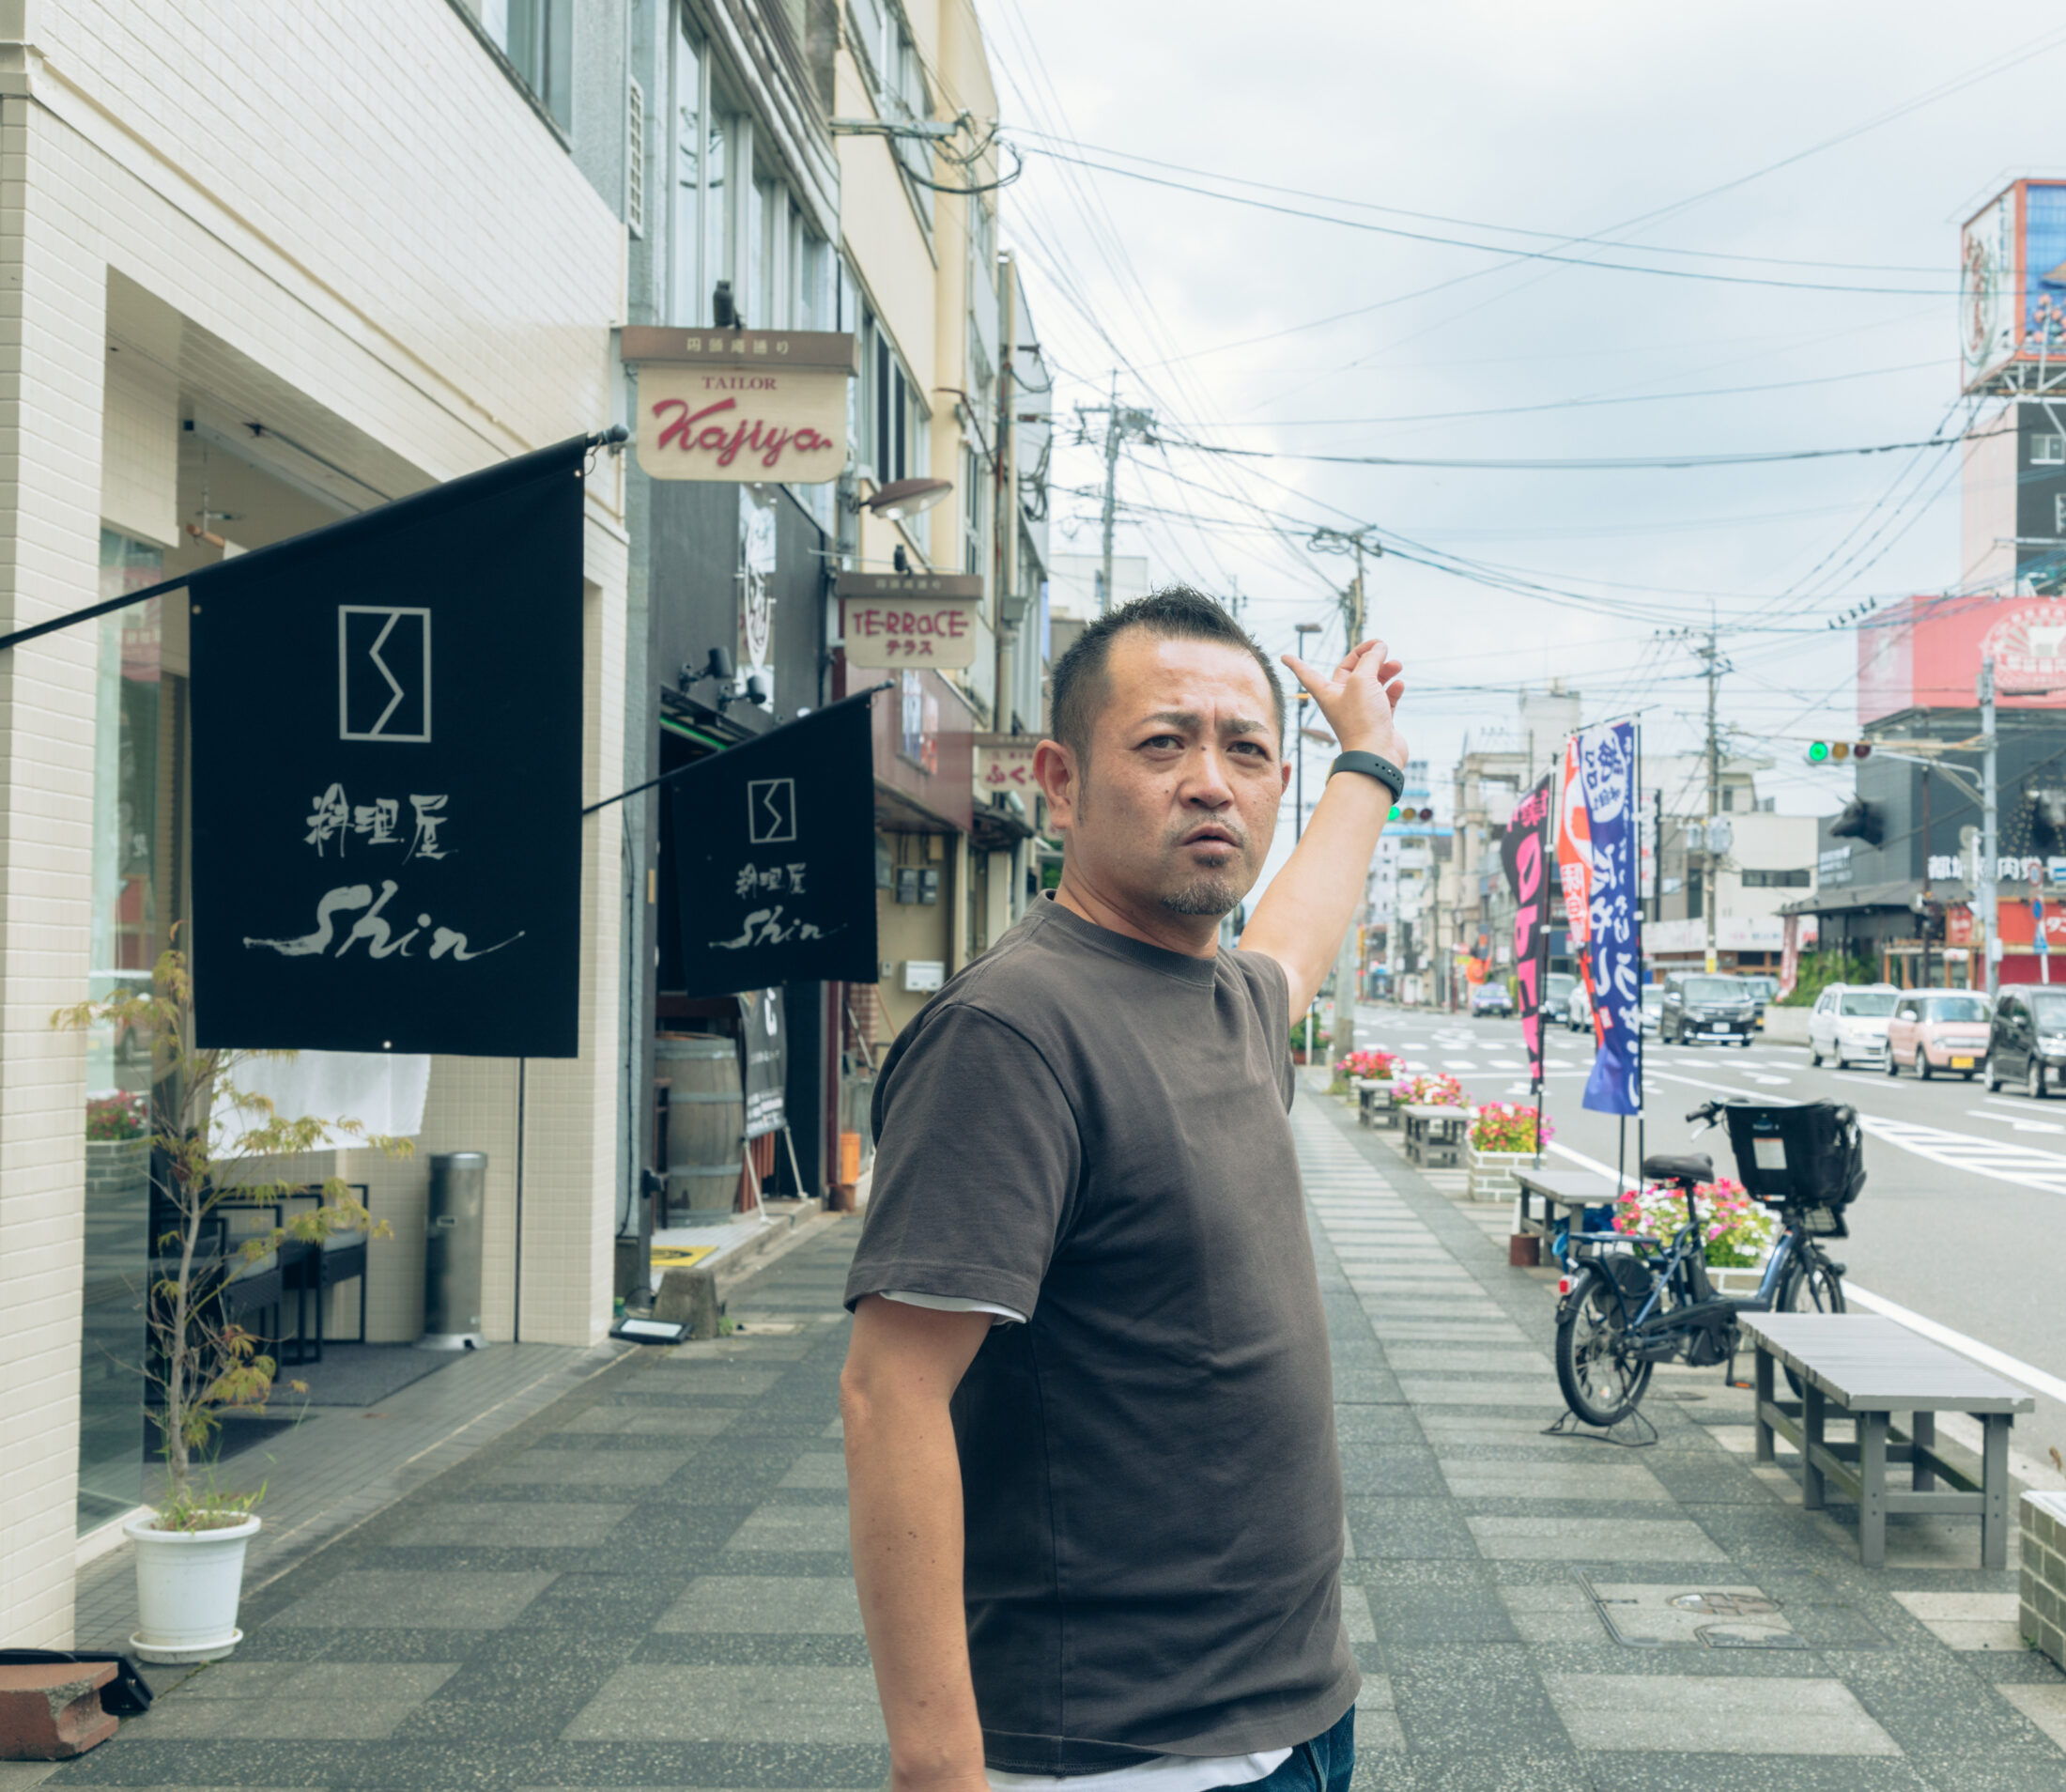 お店の前で。「中心地にお店が増え、徐々に牟田町に人が戻ってきているのを実感しています」